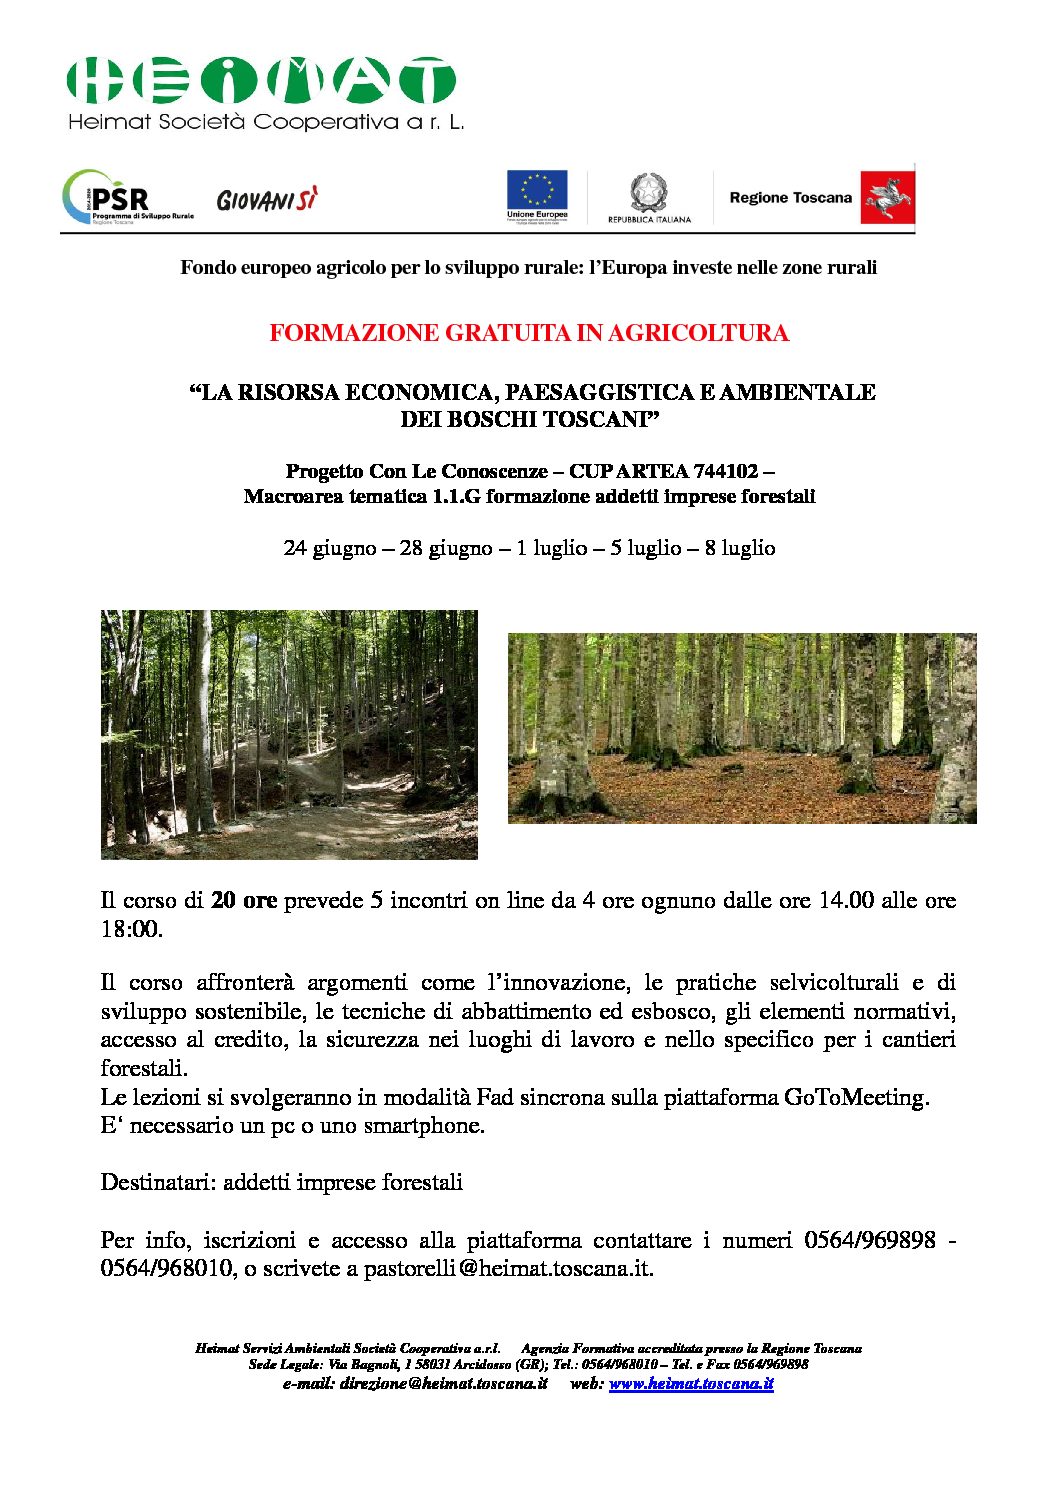 La risorsa economica, paesaggistica e ambientale dei boschi toscani